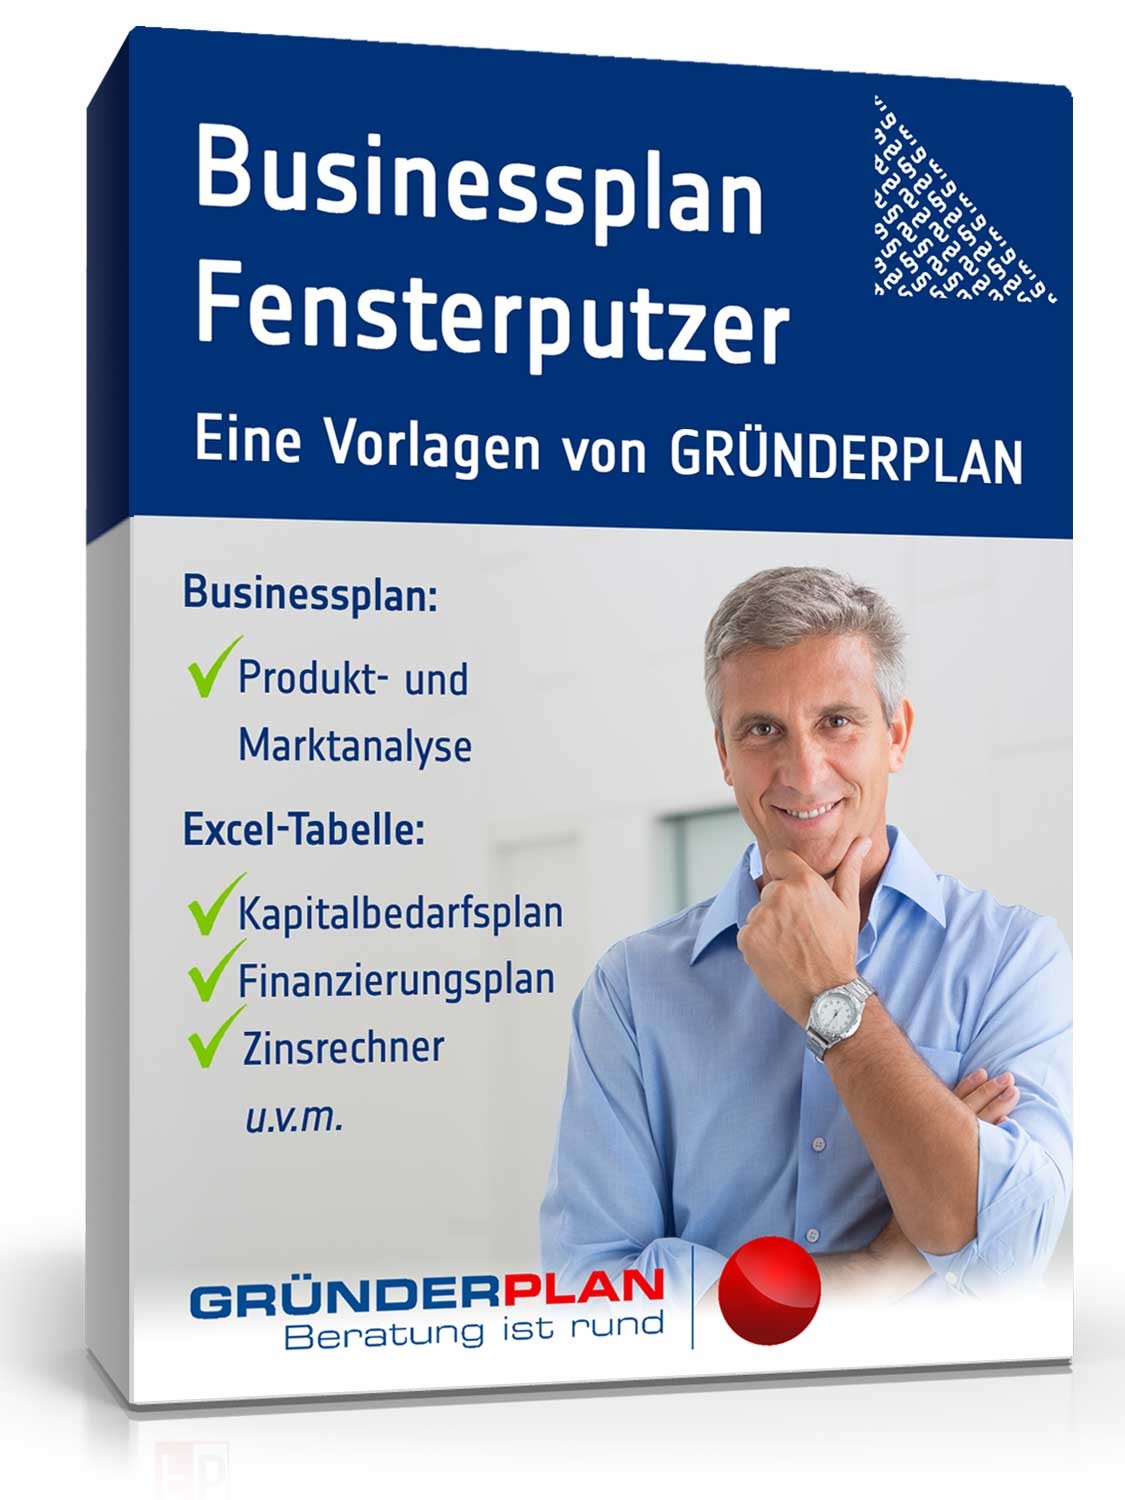 Hauptbild des Produkts: Businessplan Fensterputzer von Gründerplan